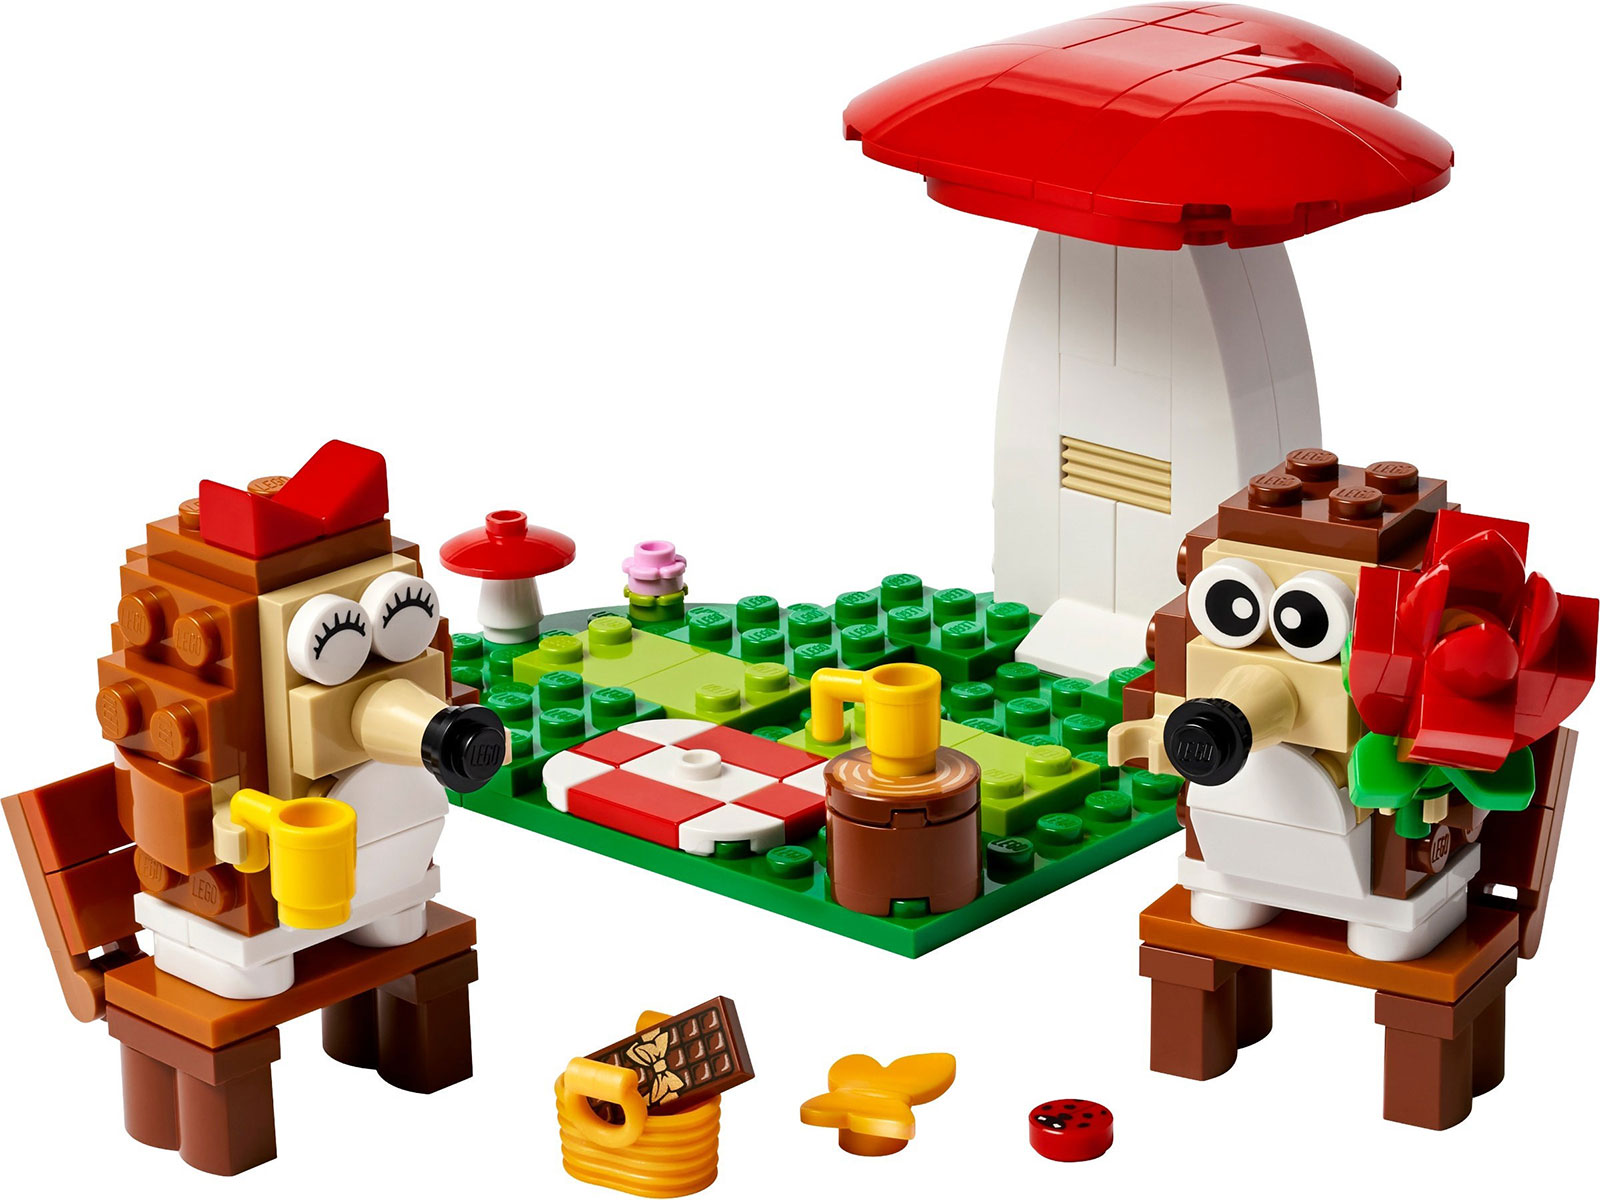 LEGO® 40711 - Igel und ihr Picknick-Date